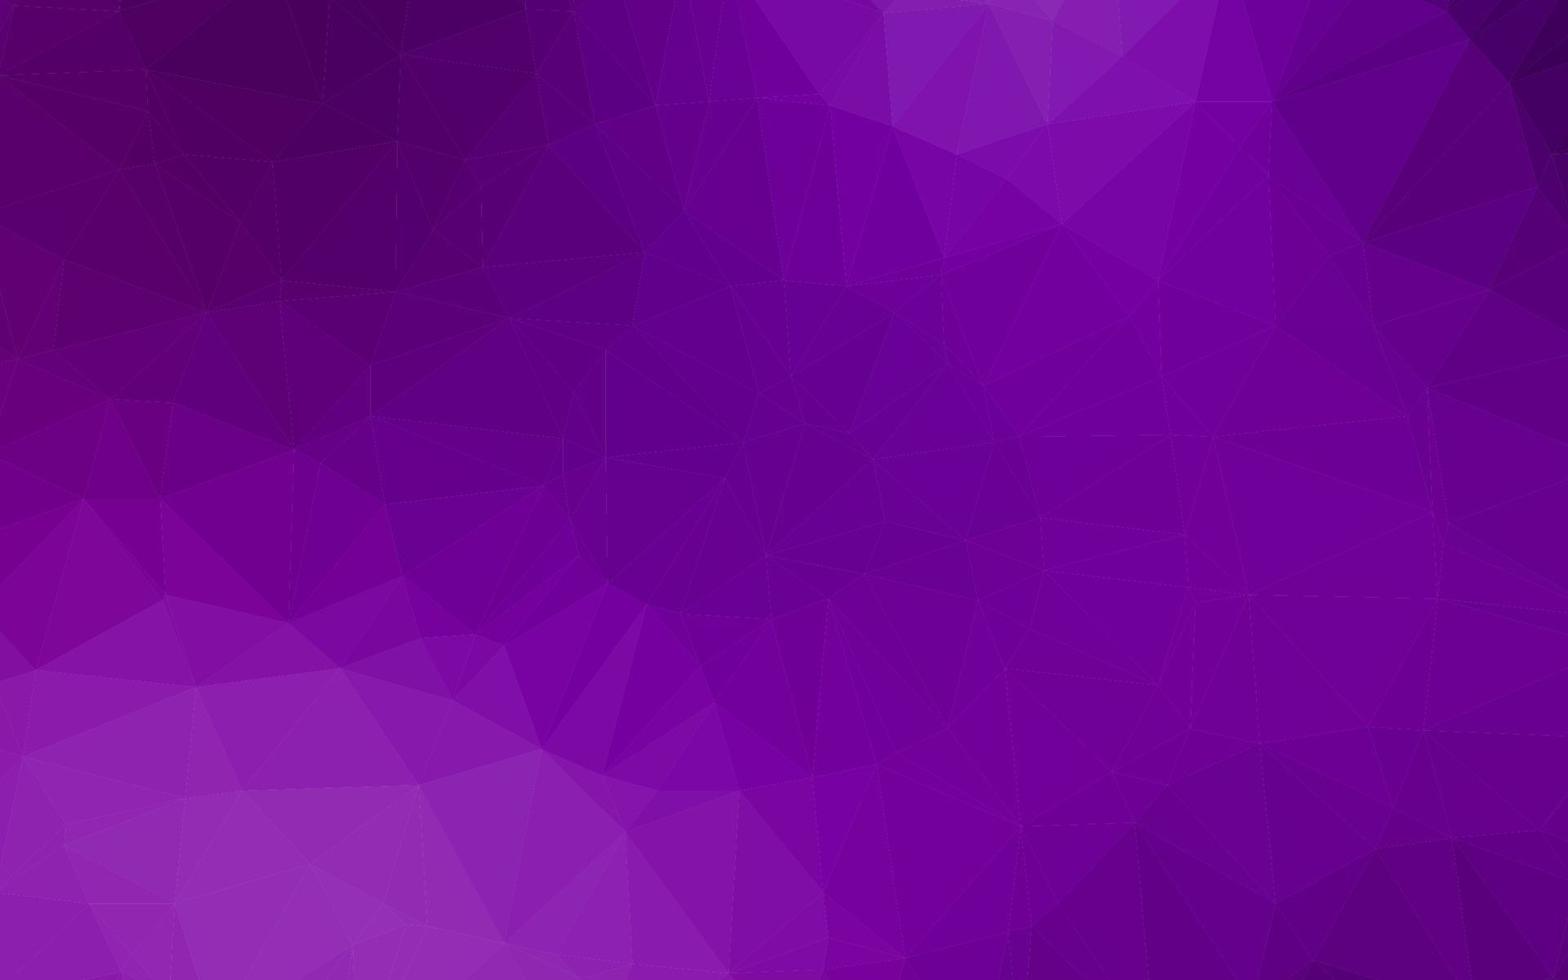 diseño poligonal abstracto vector púrpura claro.